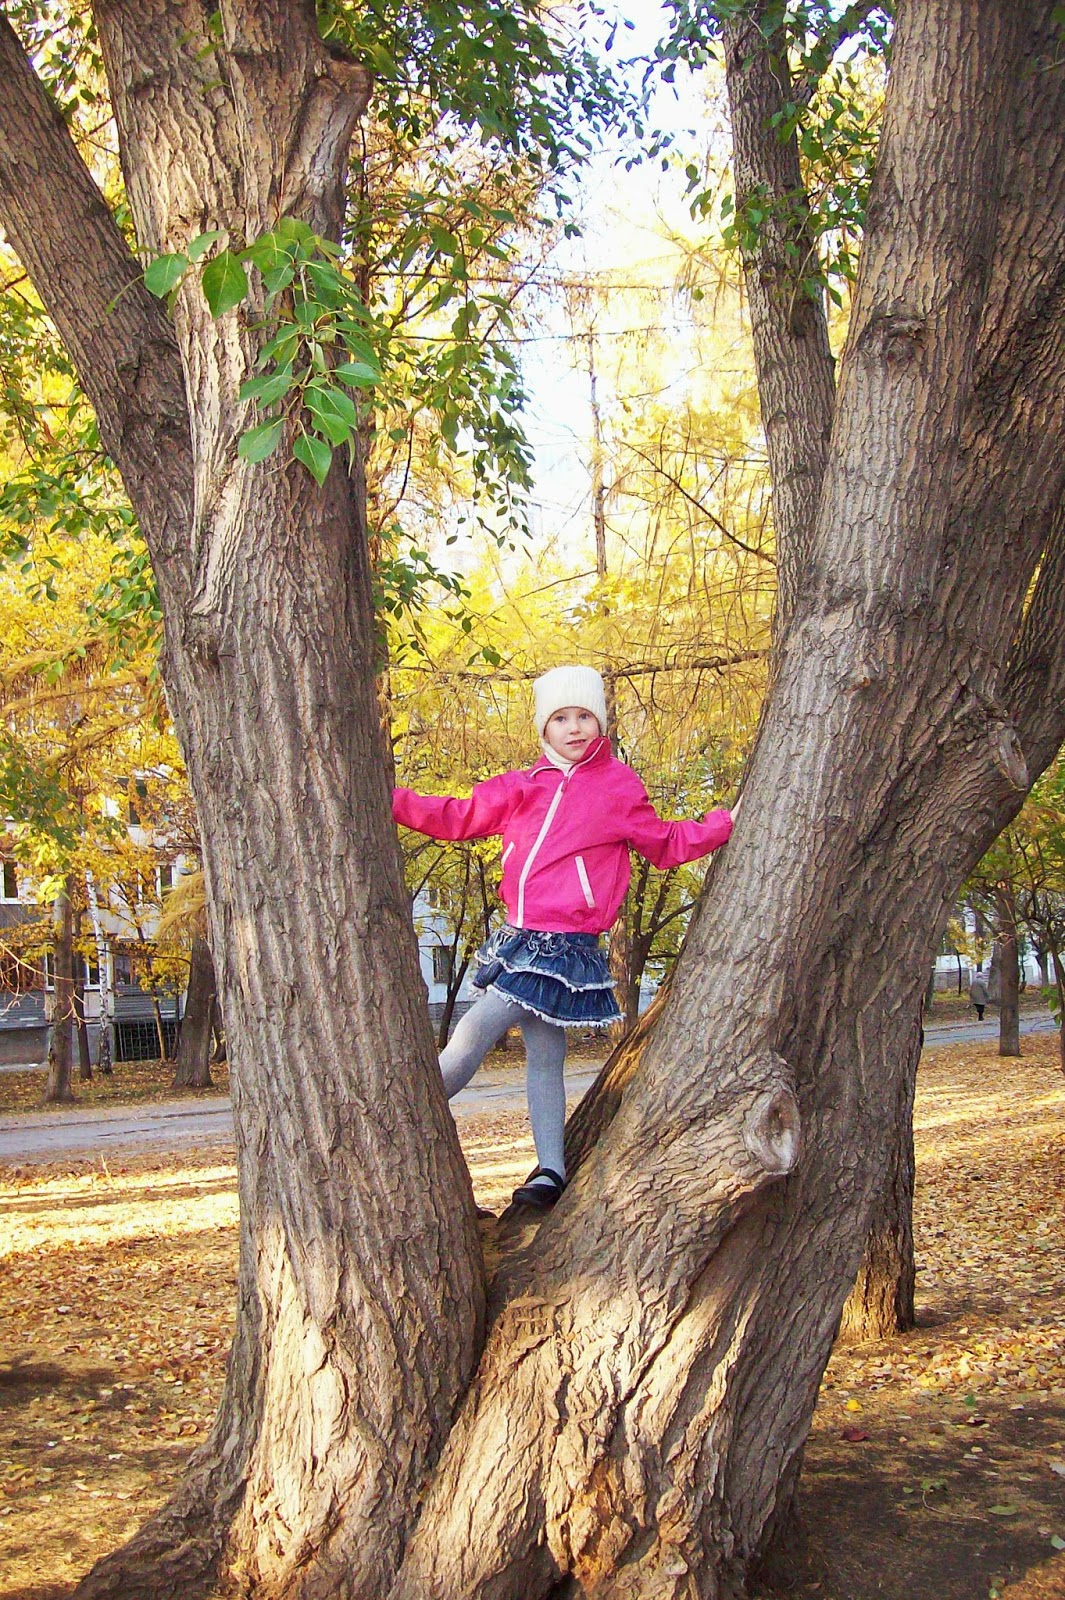 залезать на дерево - увлекательнейшее занятие!